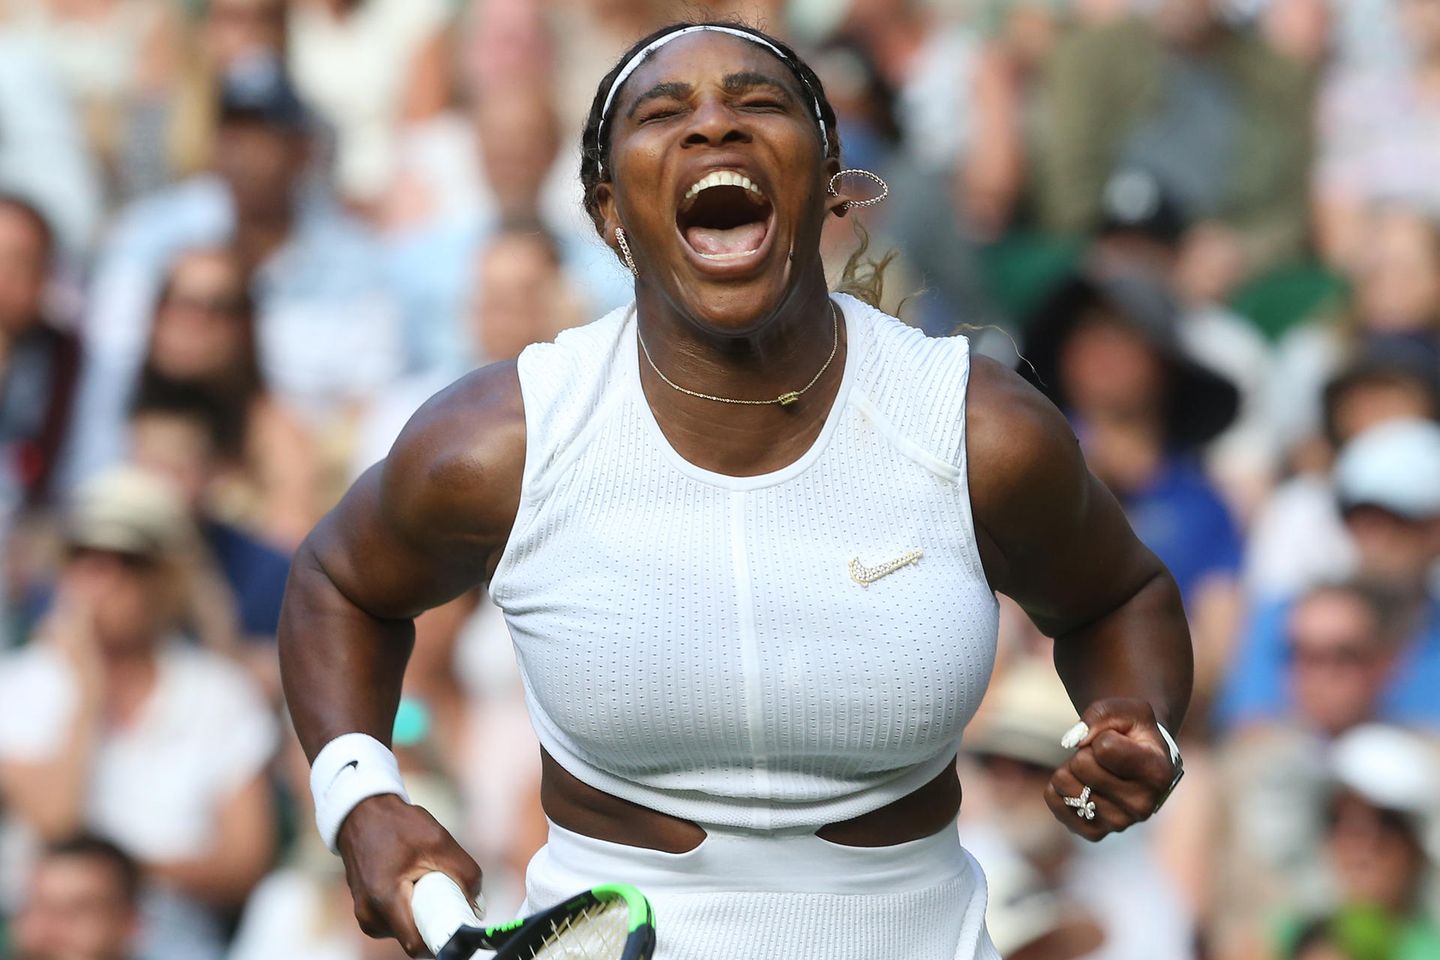 Tennisspielerin Serena Williams beim Auftaktmatch gegen die Italienerin Giulia Gatto-Monticonein in Wimbledon.